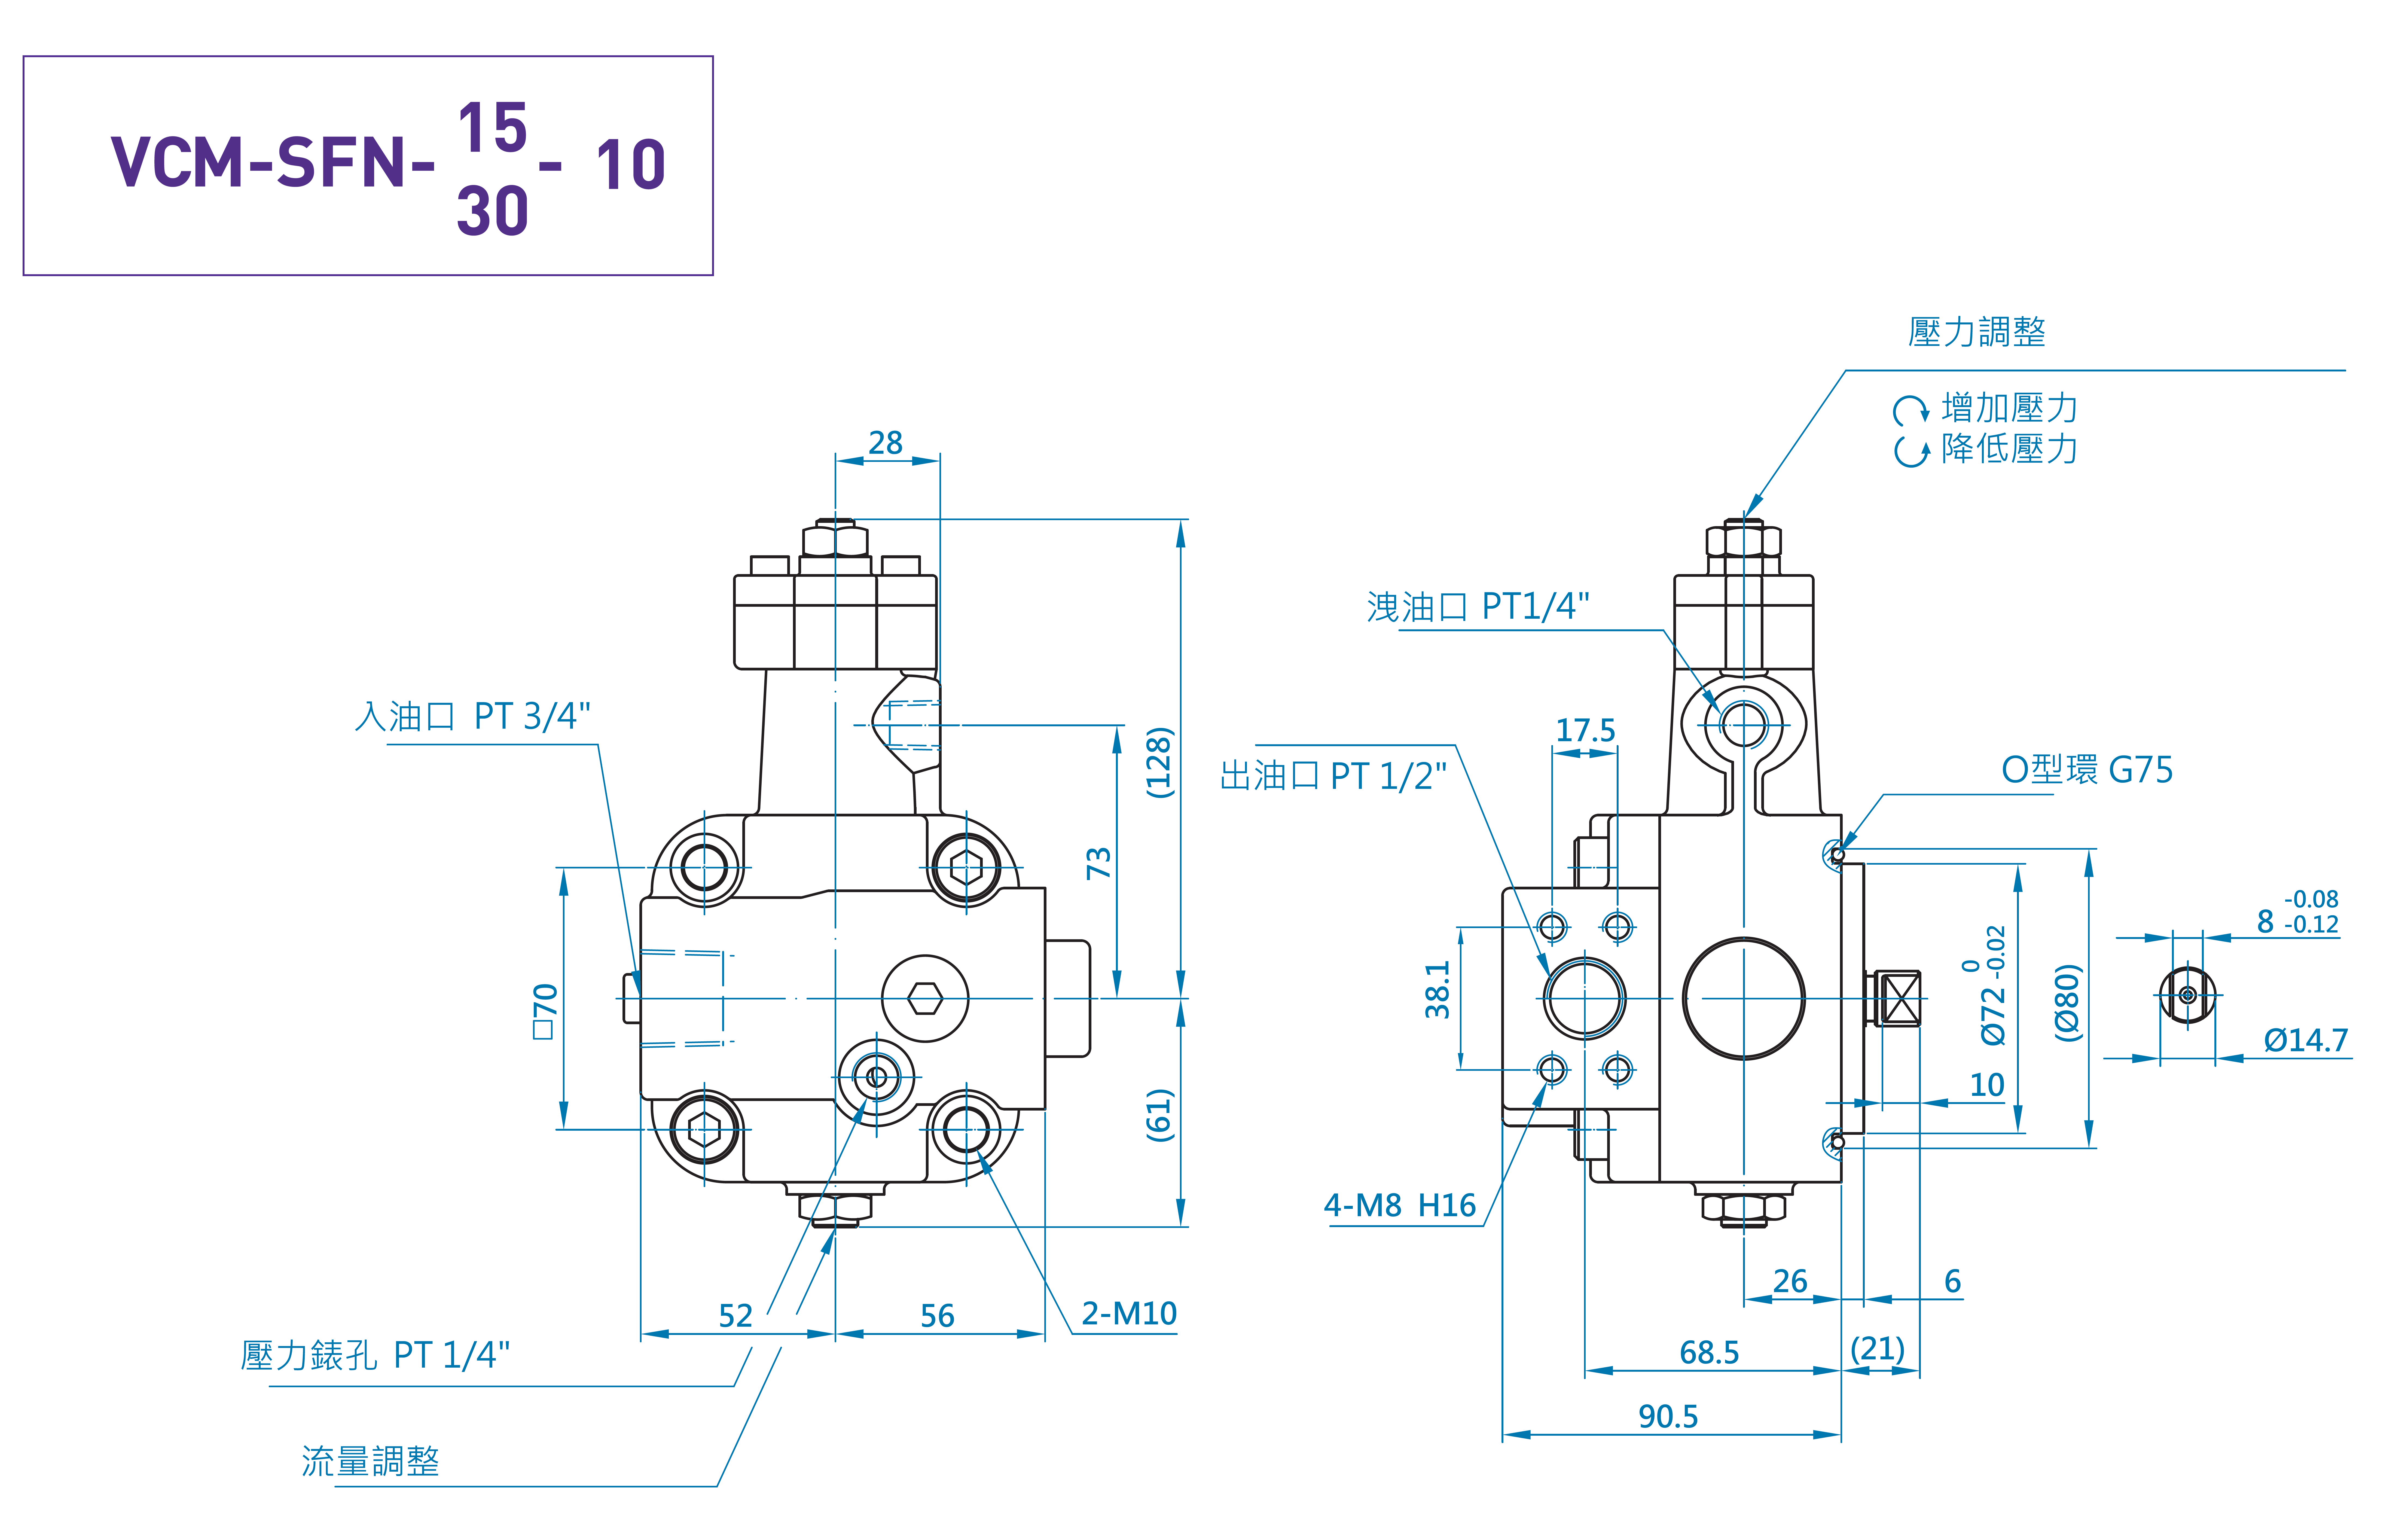 CML Medição, Dimensão, Diagrama da Bomba de Palheta Variável Compacta com Válvula de Retenção SFN